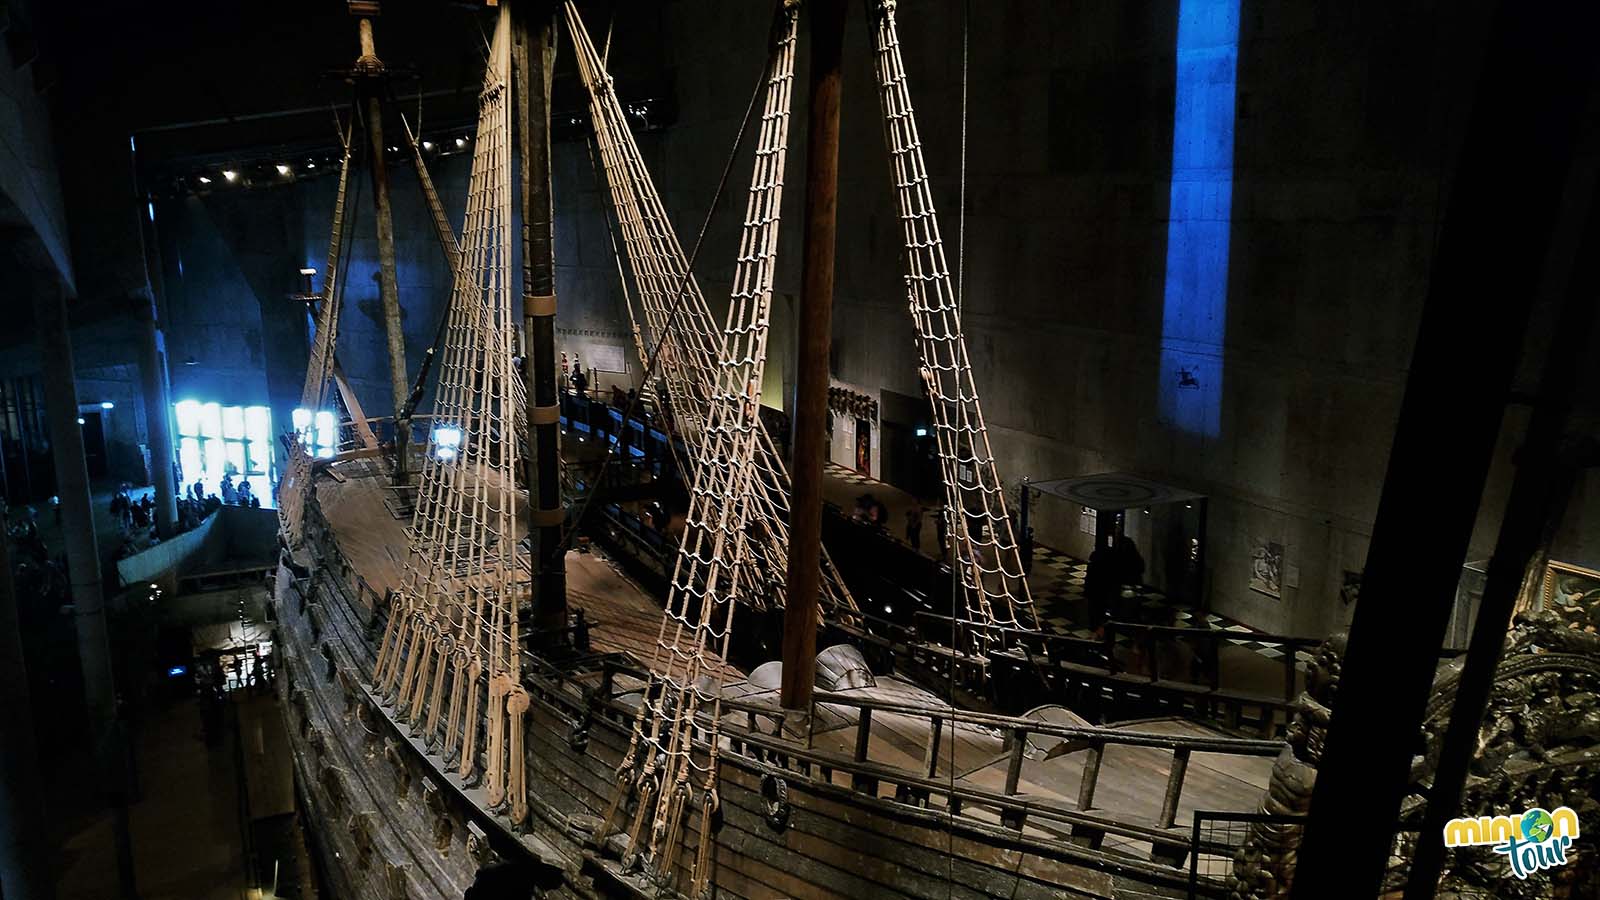 Vista de el Vasa desde en interior de su museo